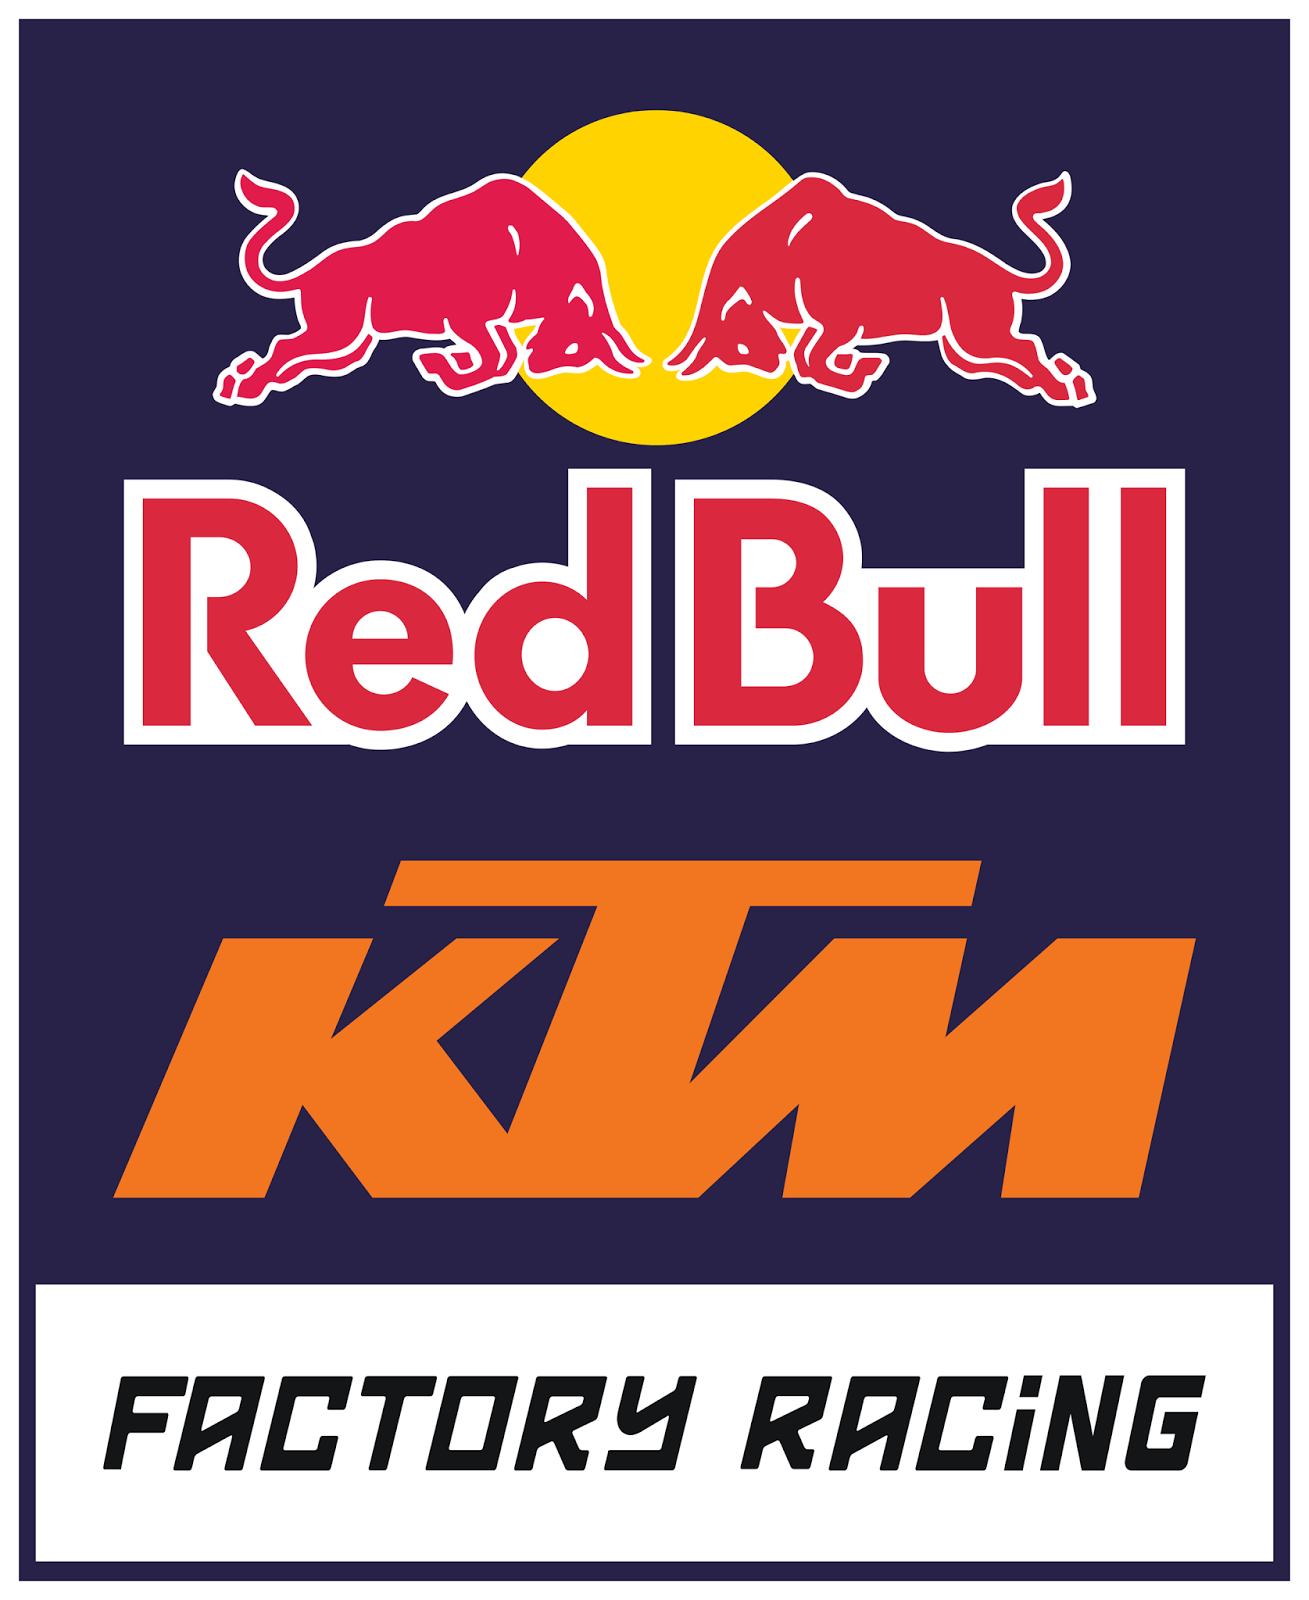 Factory KTM Logo - Pin on Motor cross